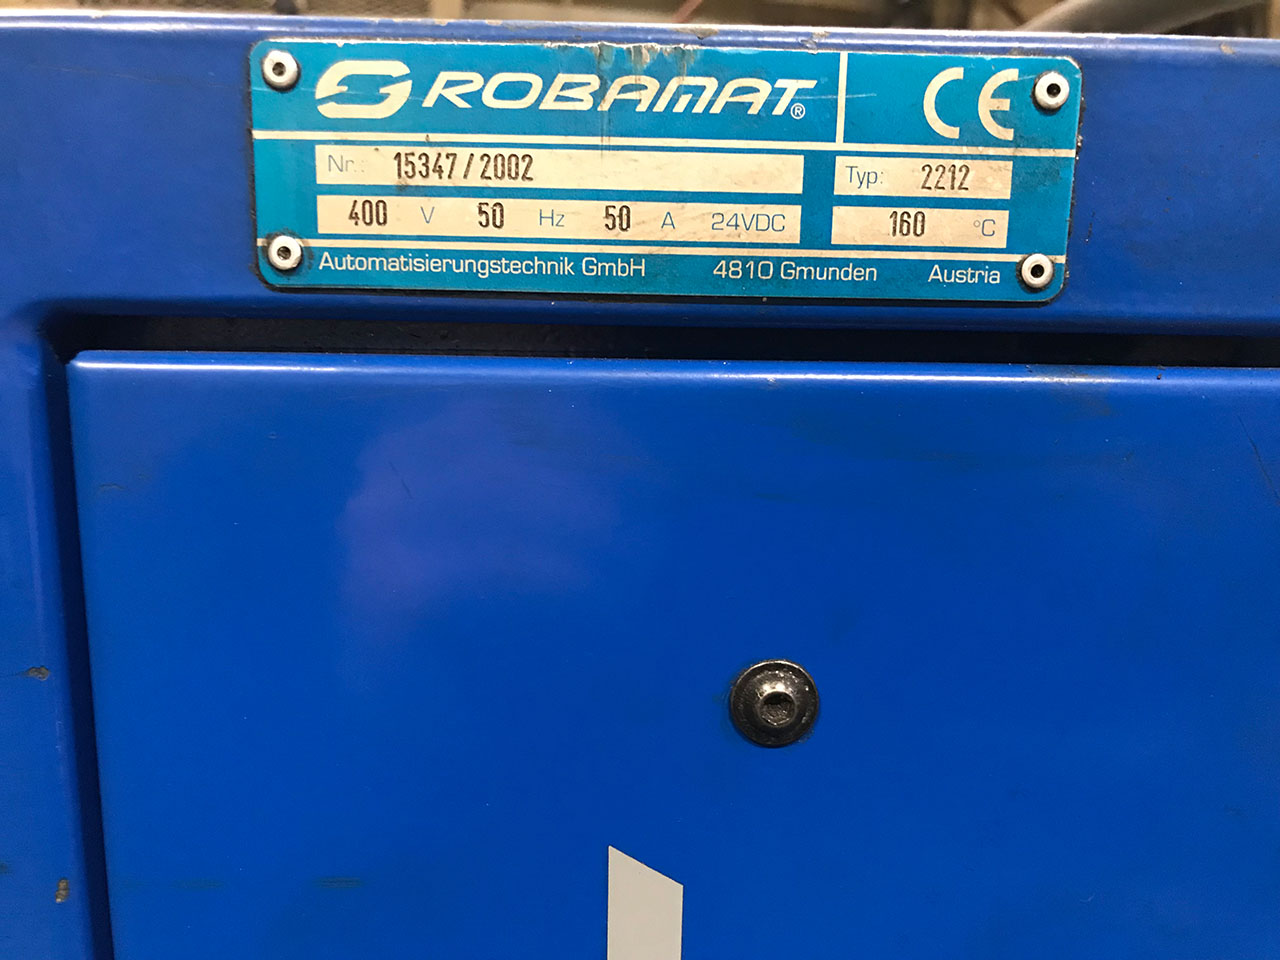 Robamat Thermocast 2212 sıcaklık kontrol ünitesi ZU2160, kullanılmış